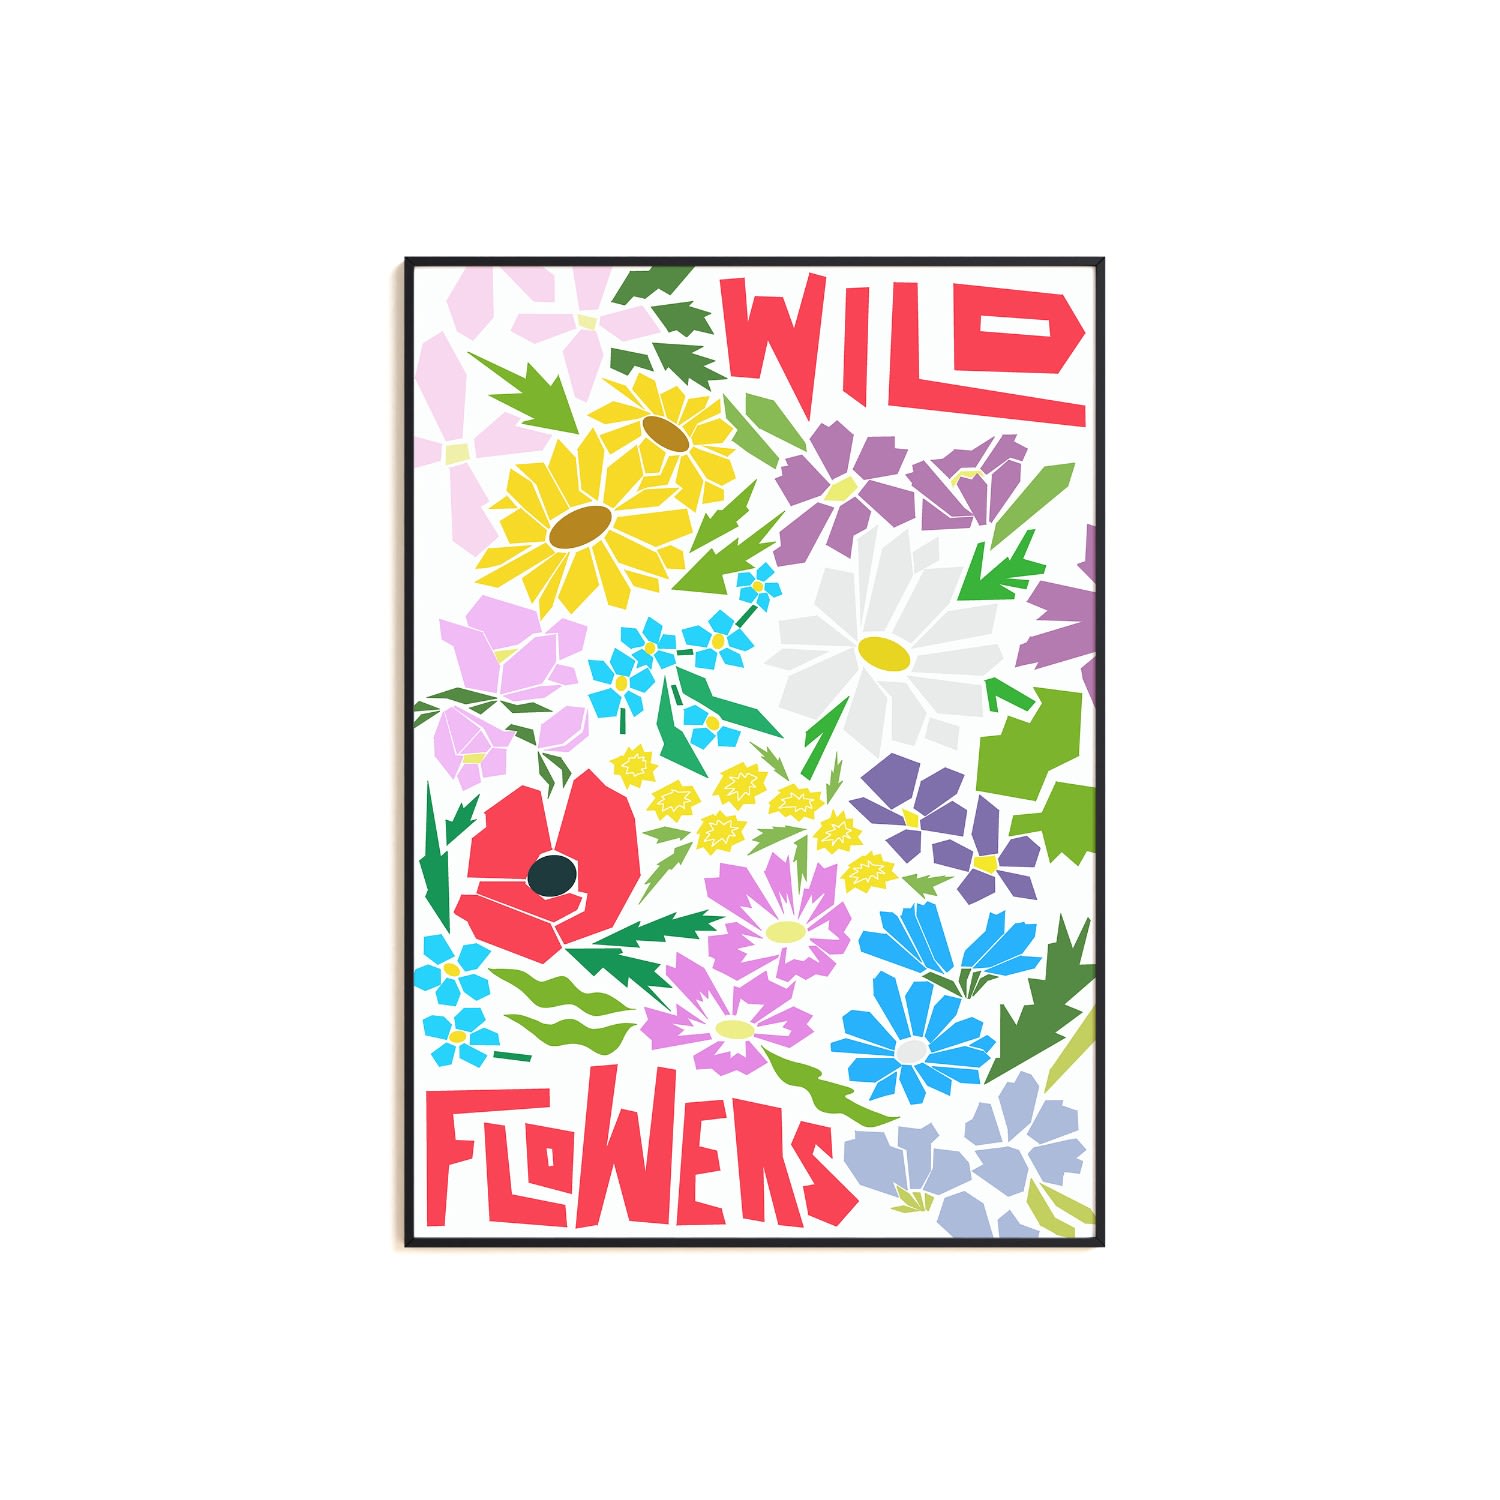 Wildflowers Art Print - A2 Natalie Cass Art